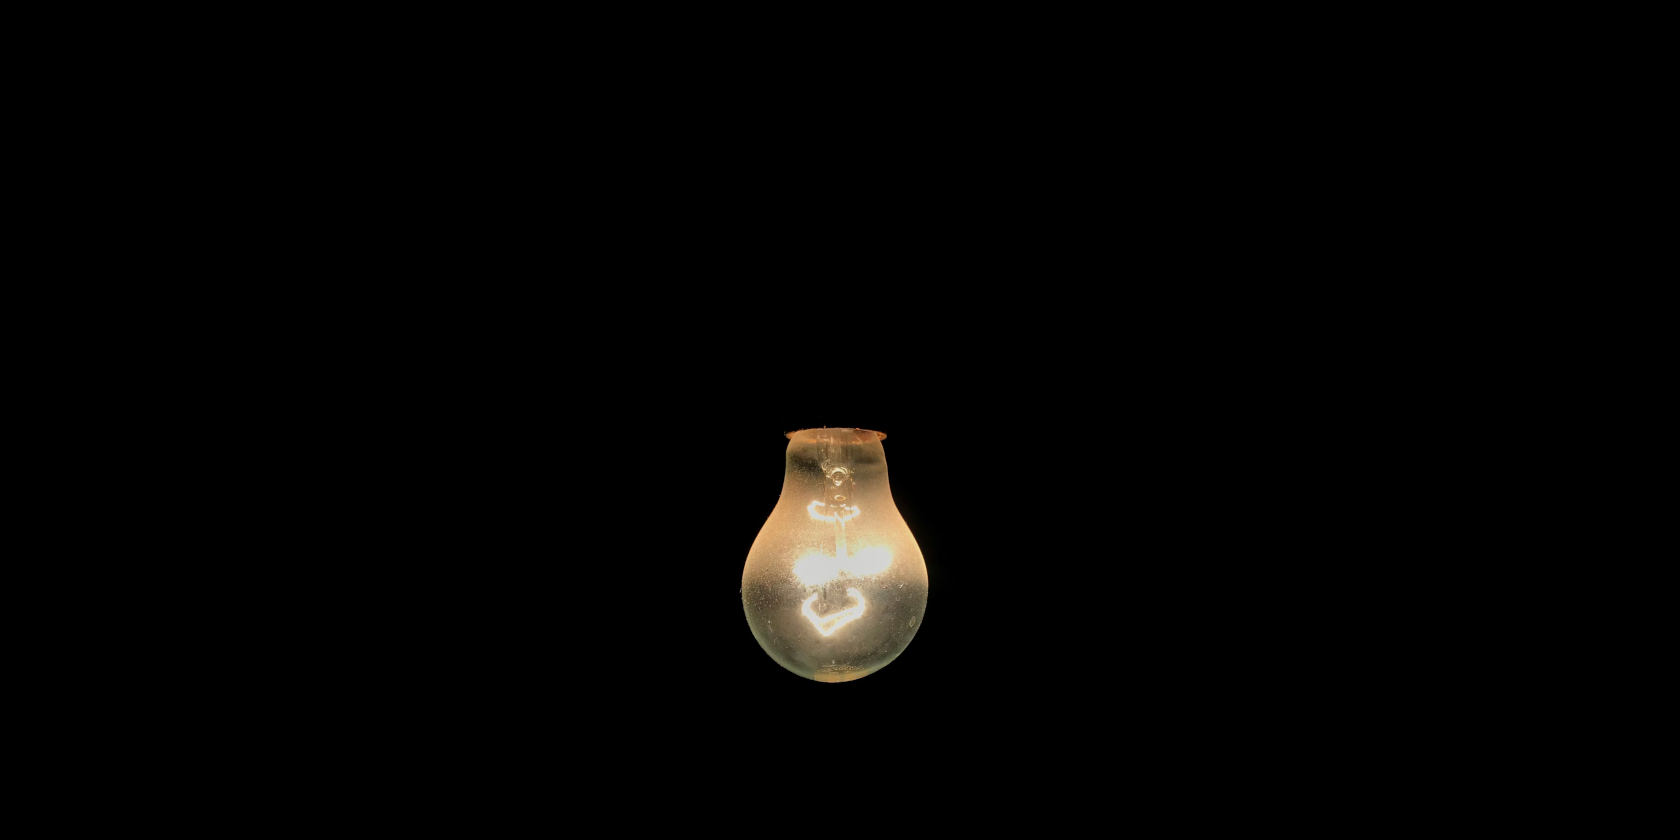 Incandescent lightbulb against a black background